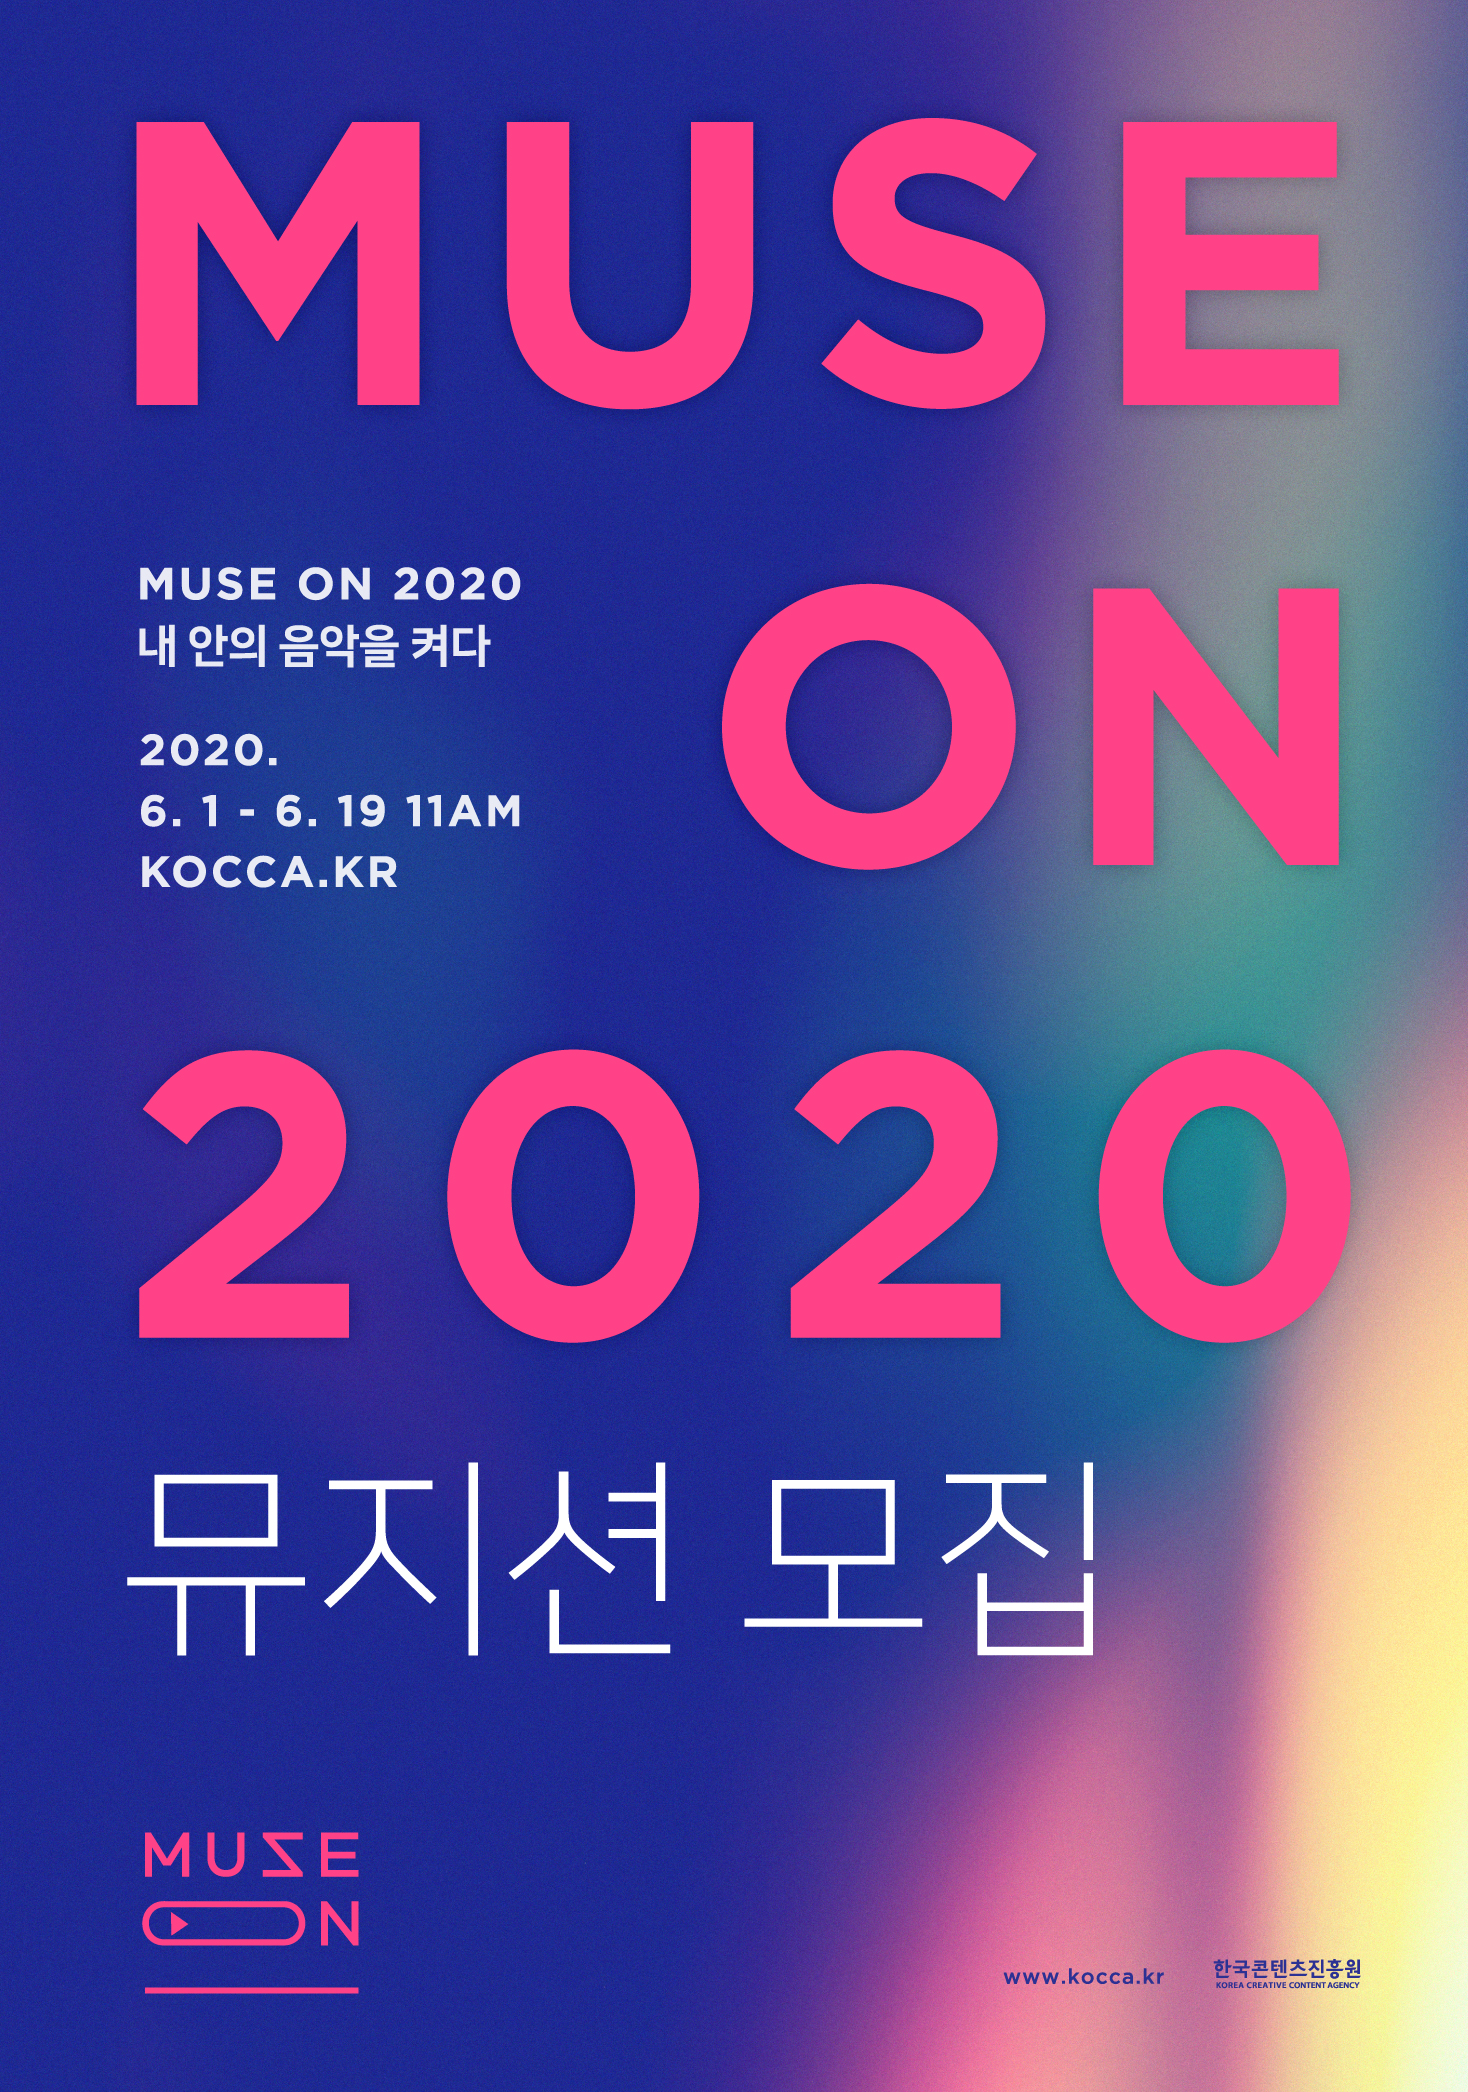 뮤즈온 2020 참가 뮤지션 모집 공고